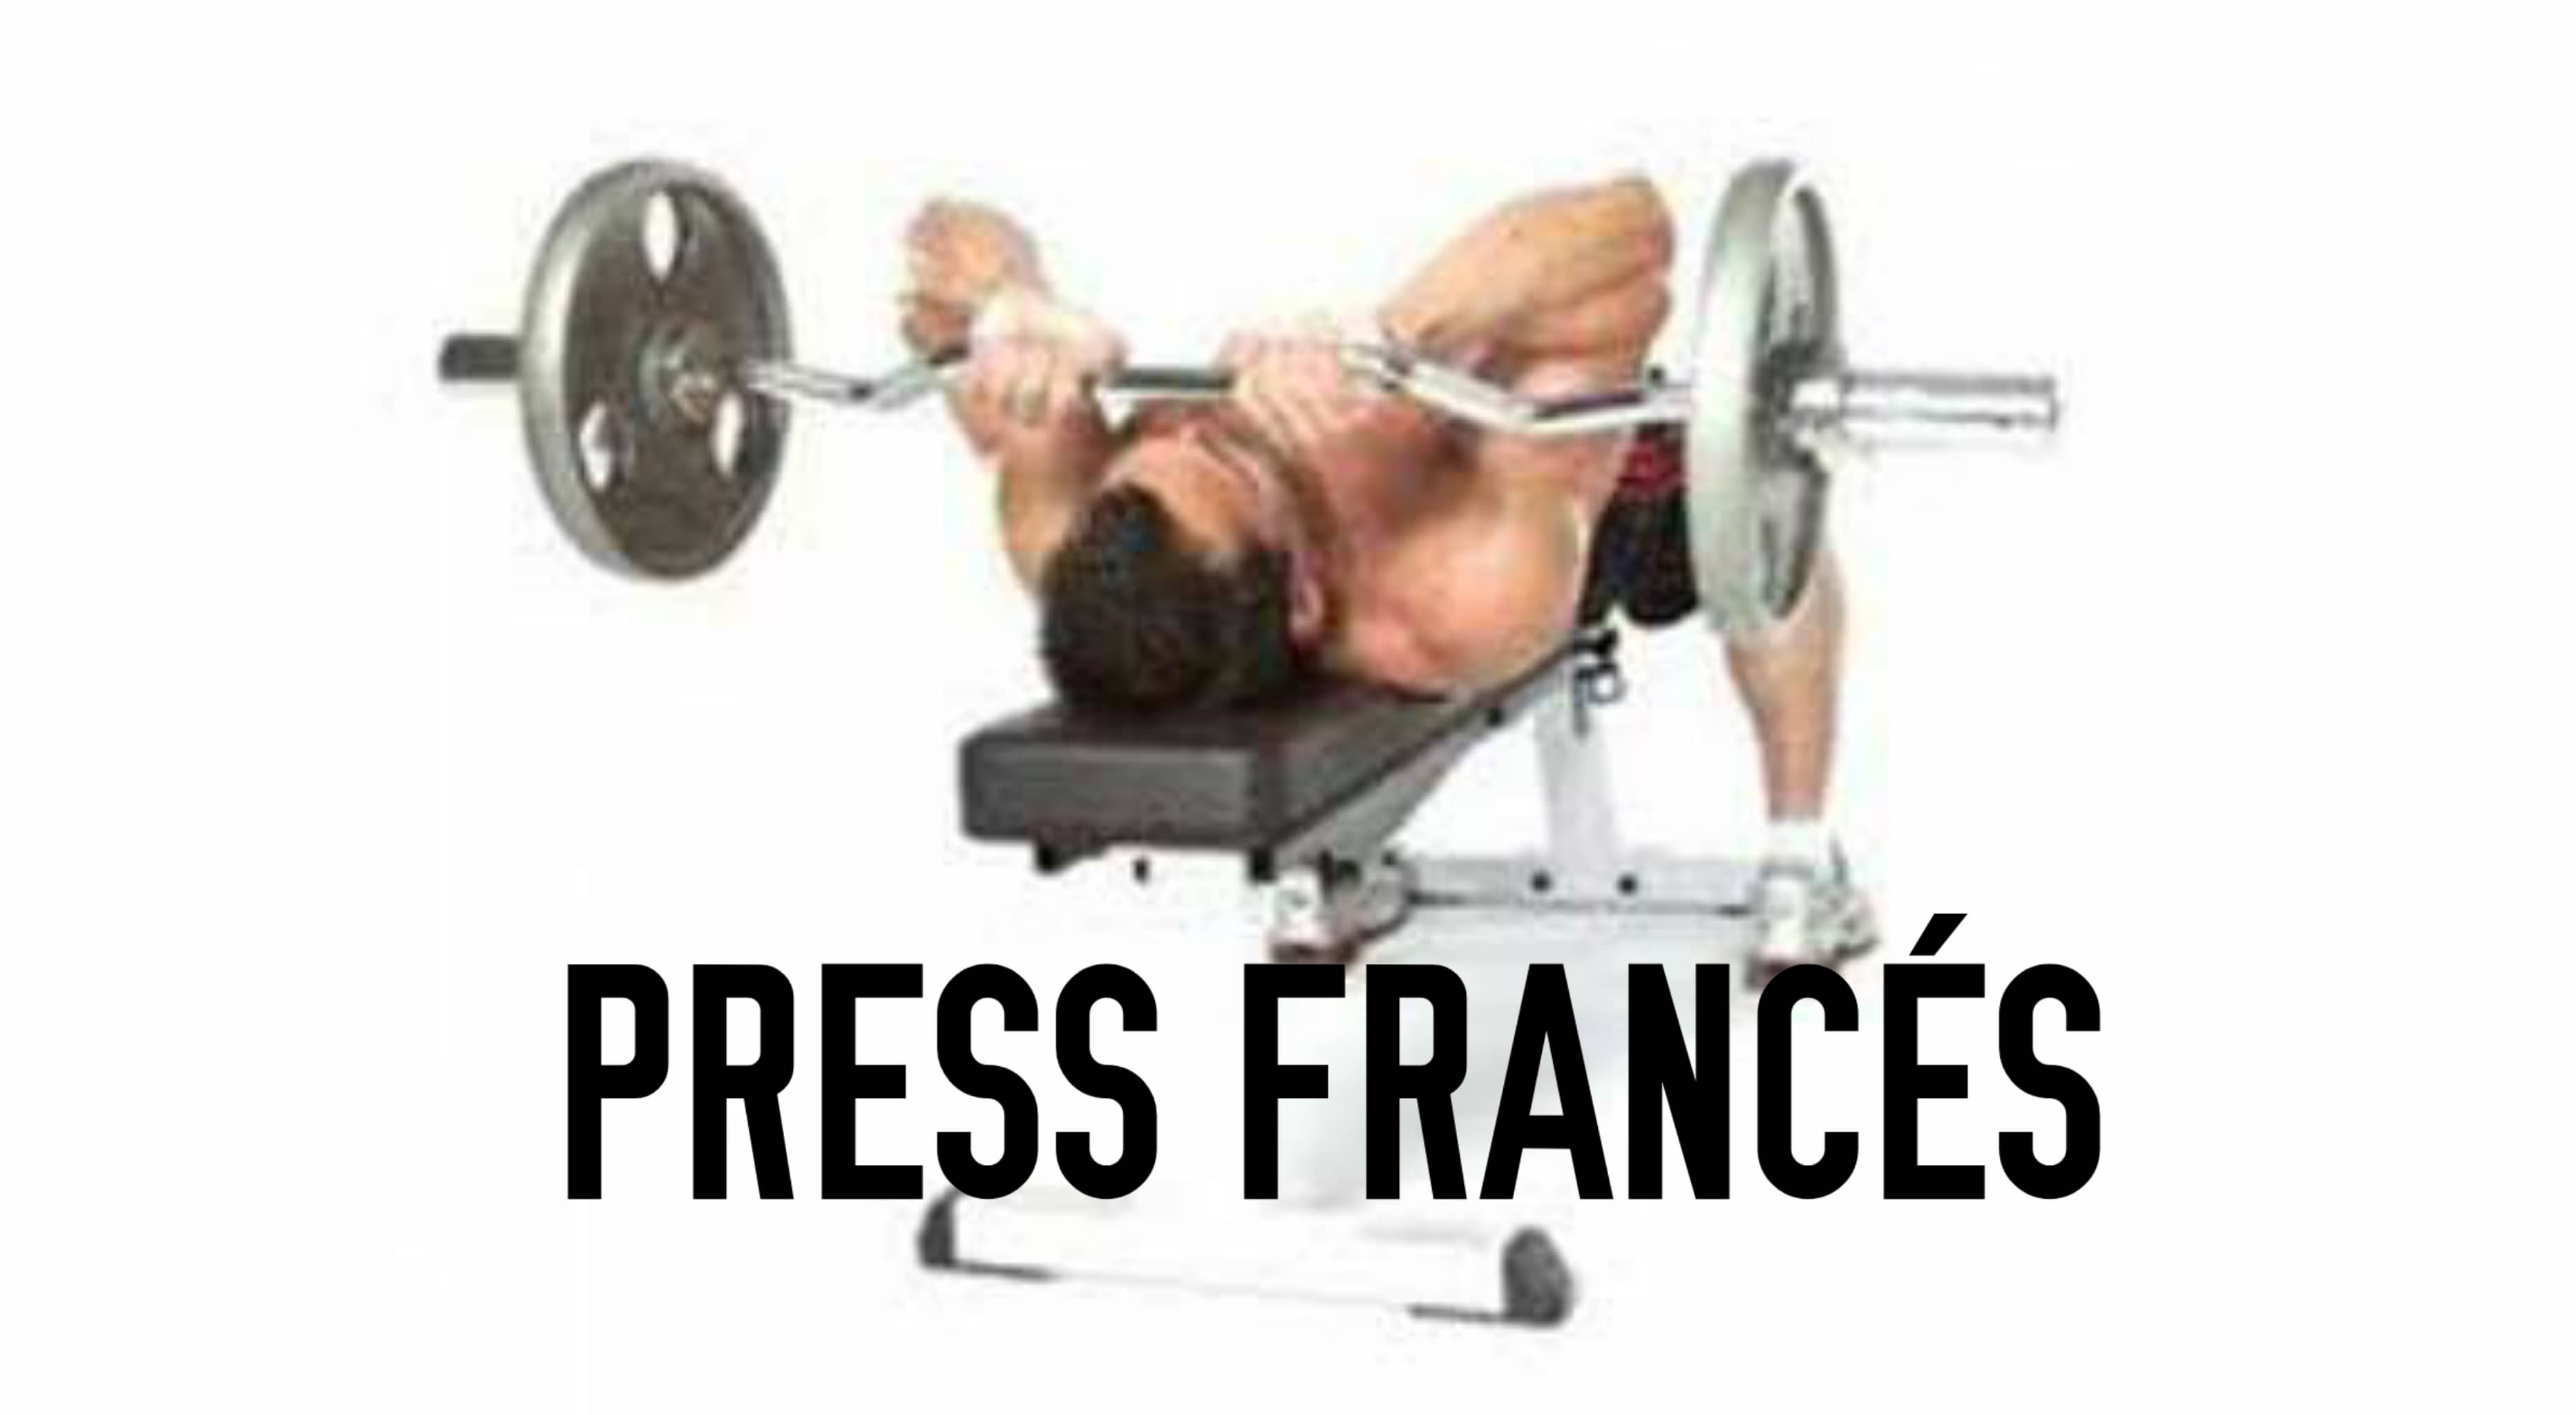 Press francés en banco plano